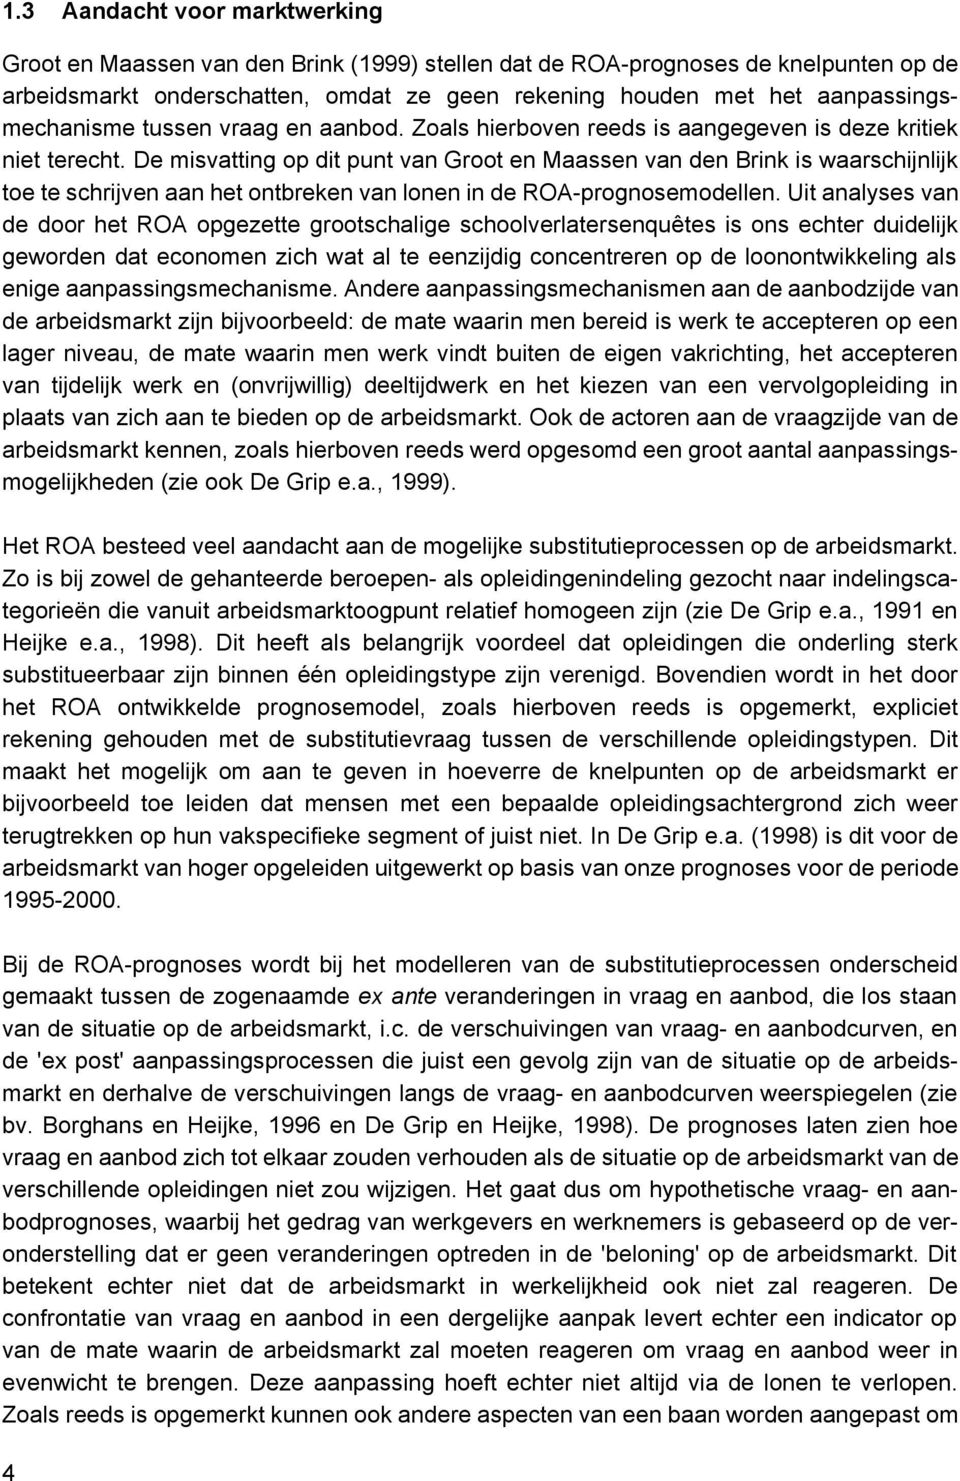 De misvatting op dit punt van Groot en Maassen van den Brink is waarschijnlijk toe te schrijven aan het ontbreken van lonen in de ROA-prognosemodellen.